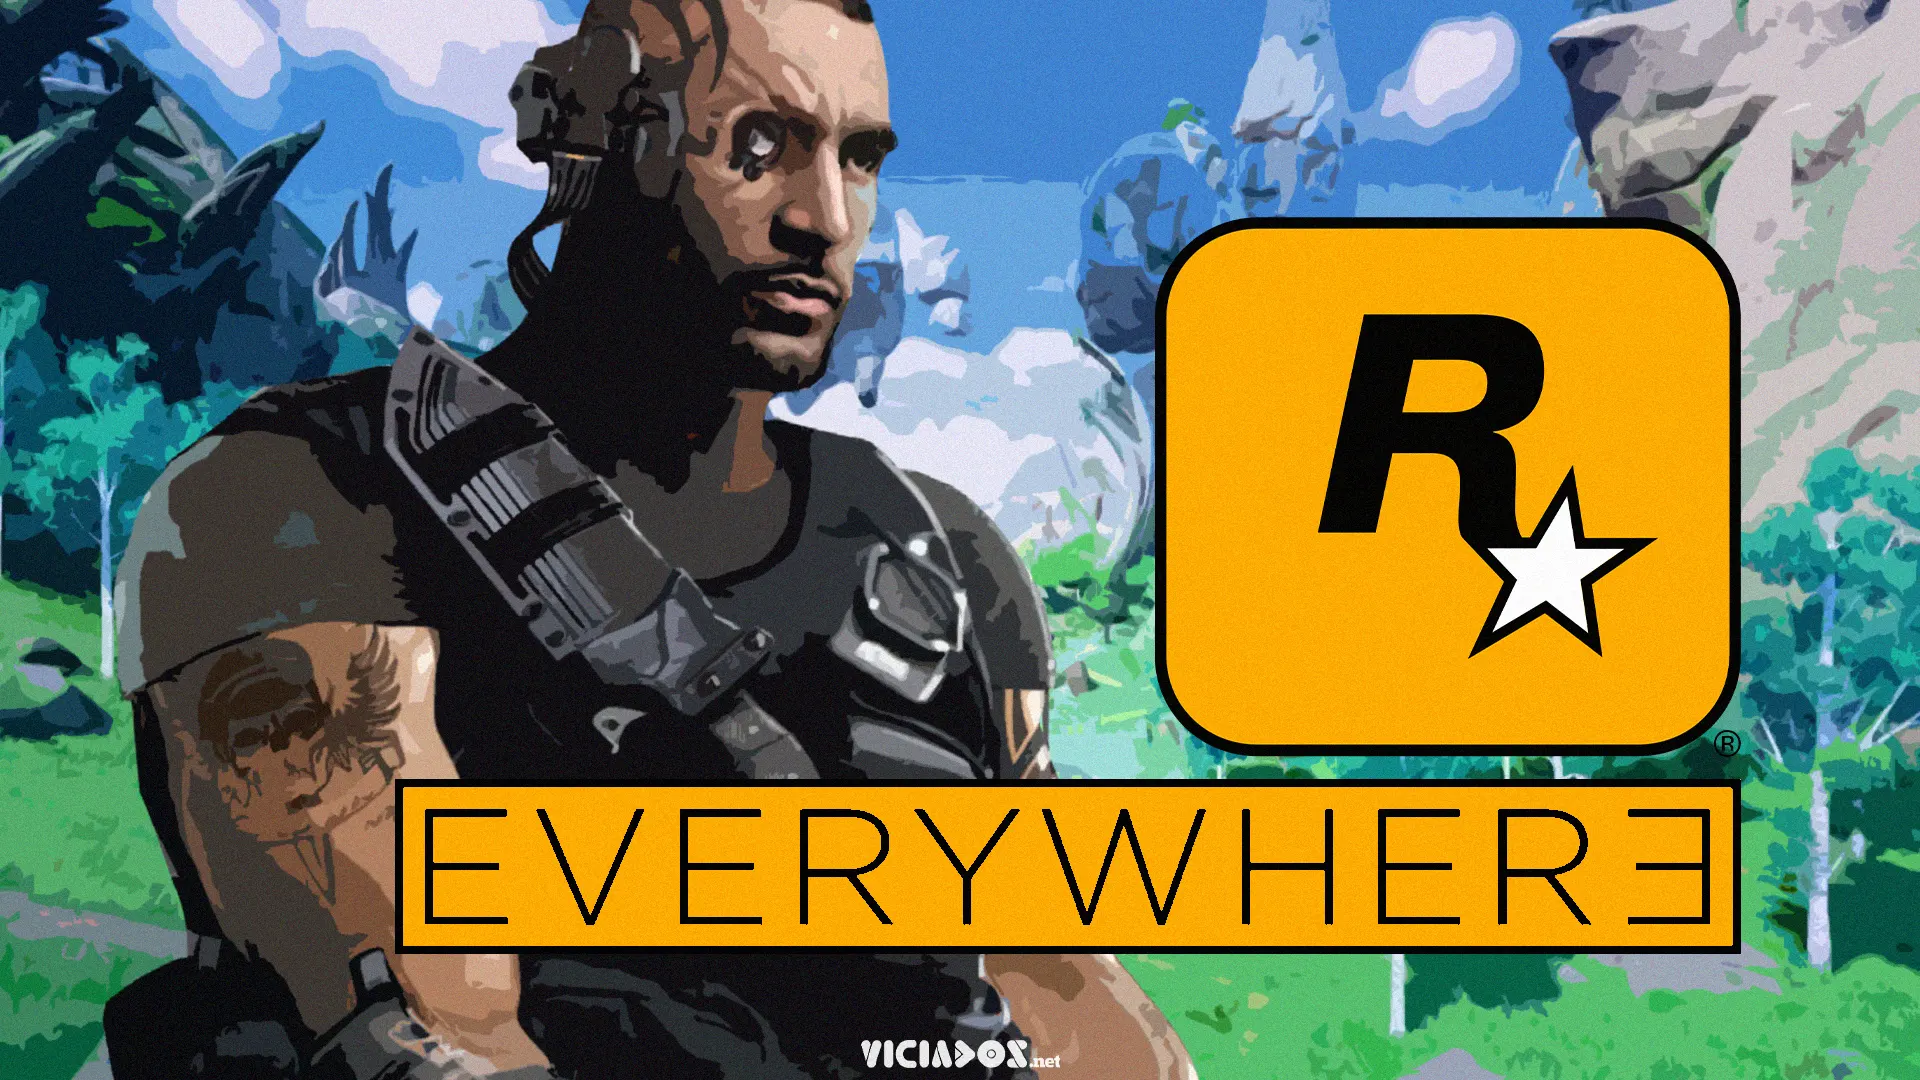 Everywhere | Vazam mais 2 imagens do projeto dos ex-funcionários da Rockstar Games 2024 Portal Viciados